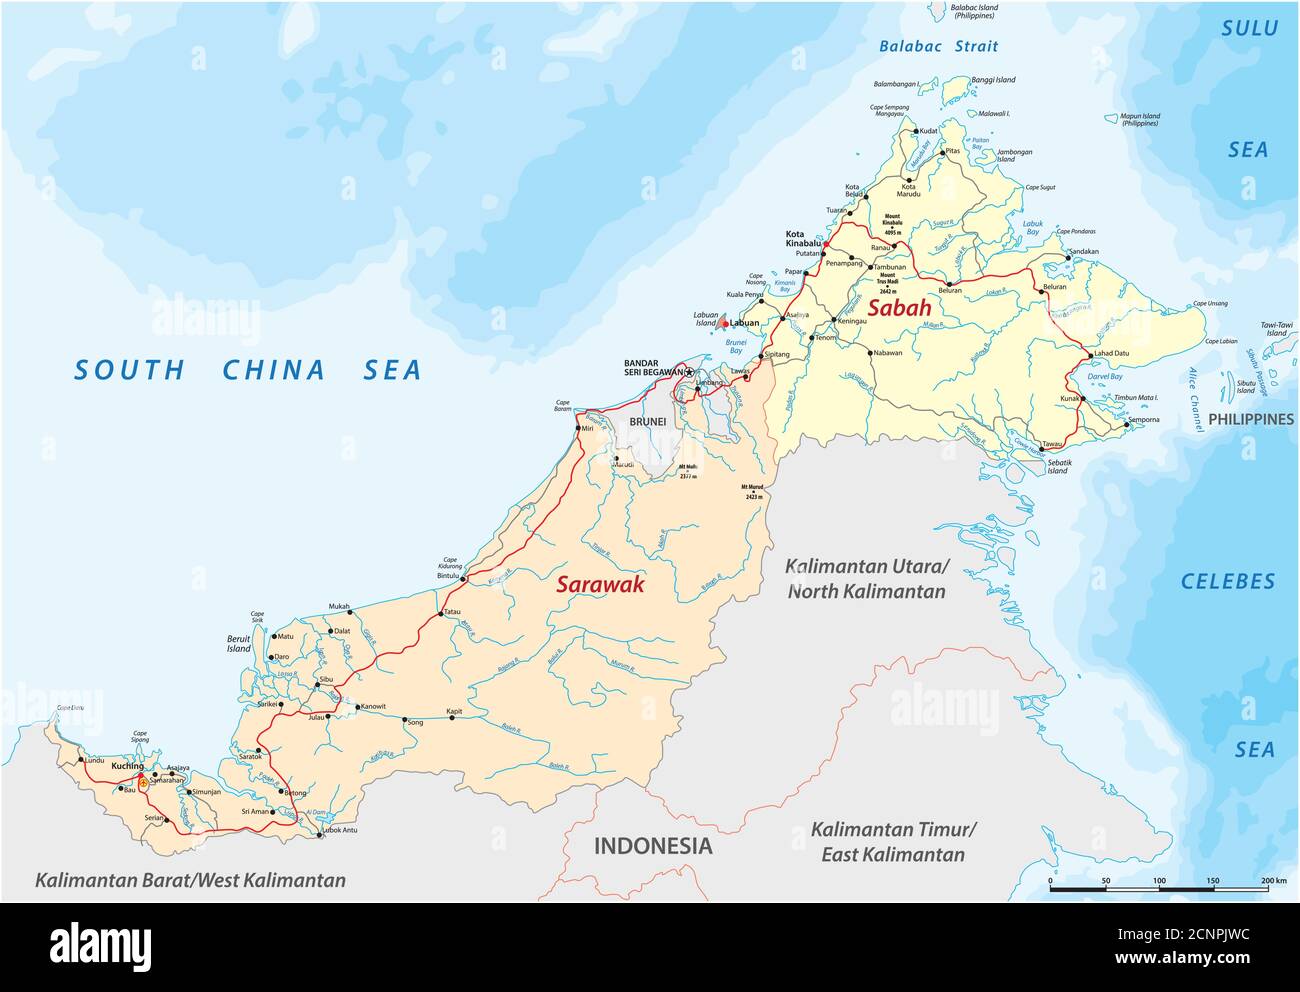 Mappa stradale vettoriale degli stati malesi di Sarawak e Sabah sull'isola di Borneo, Malesia Illustrazione Vettoriale